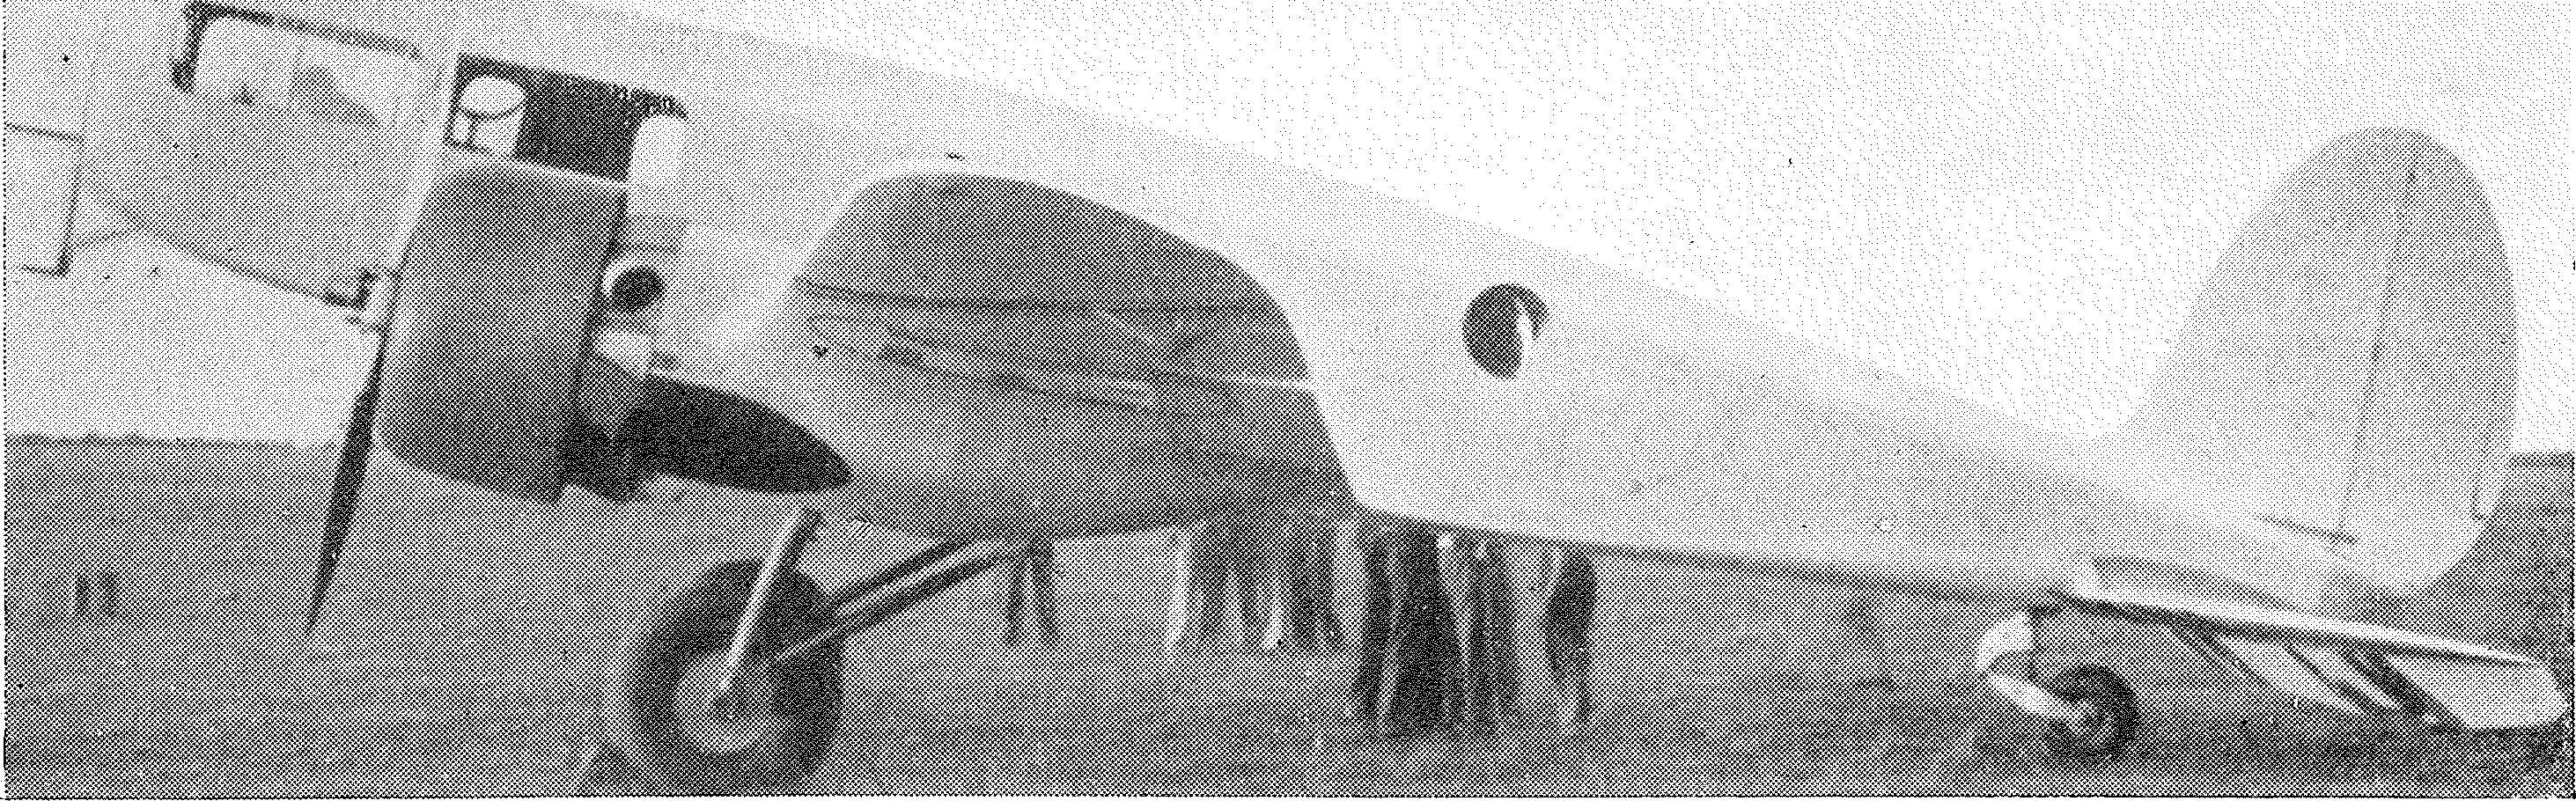 Luftfahrt und Luftverkehr sowie Luftwaffe im Dritten Reich 1938